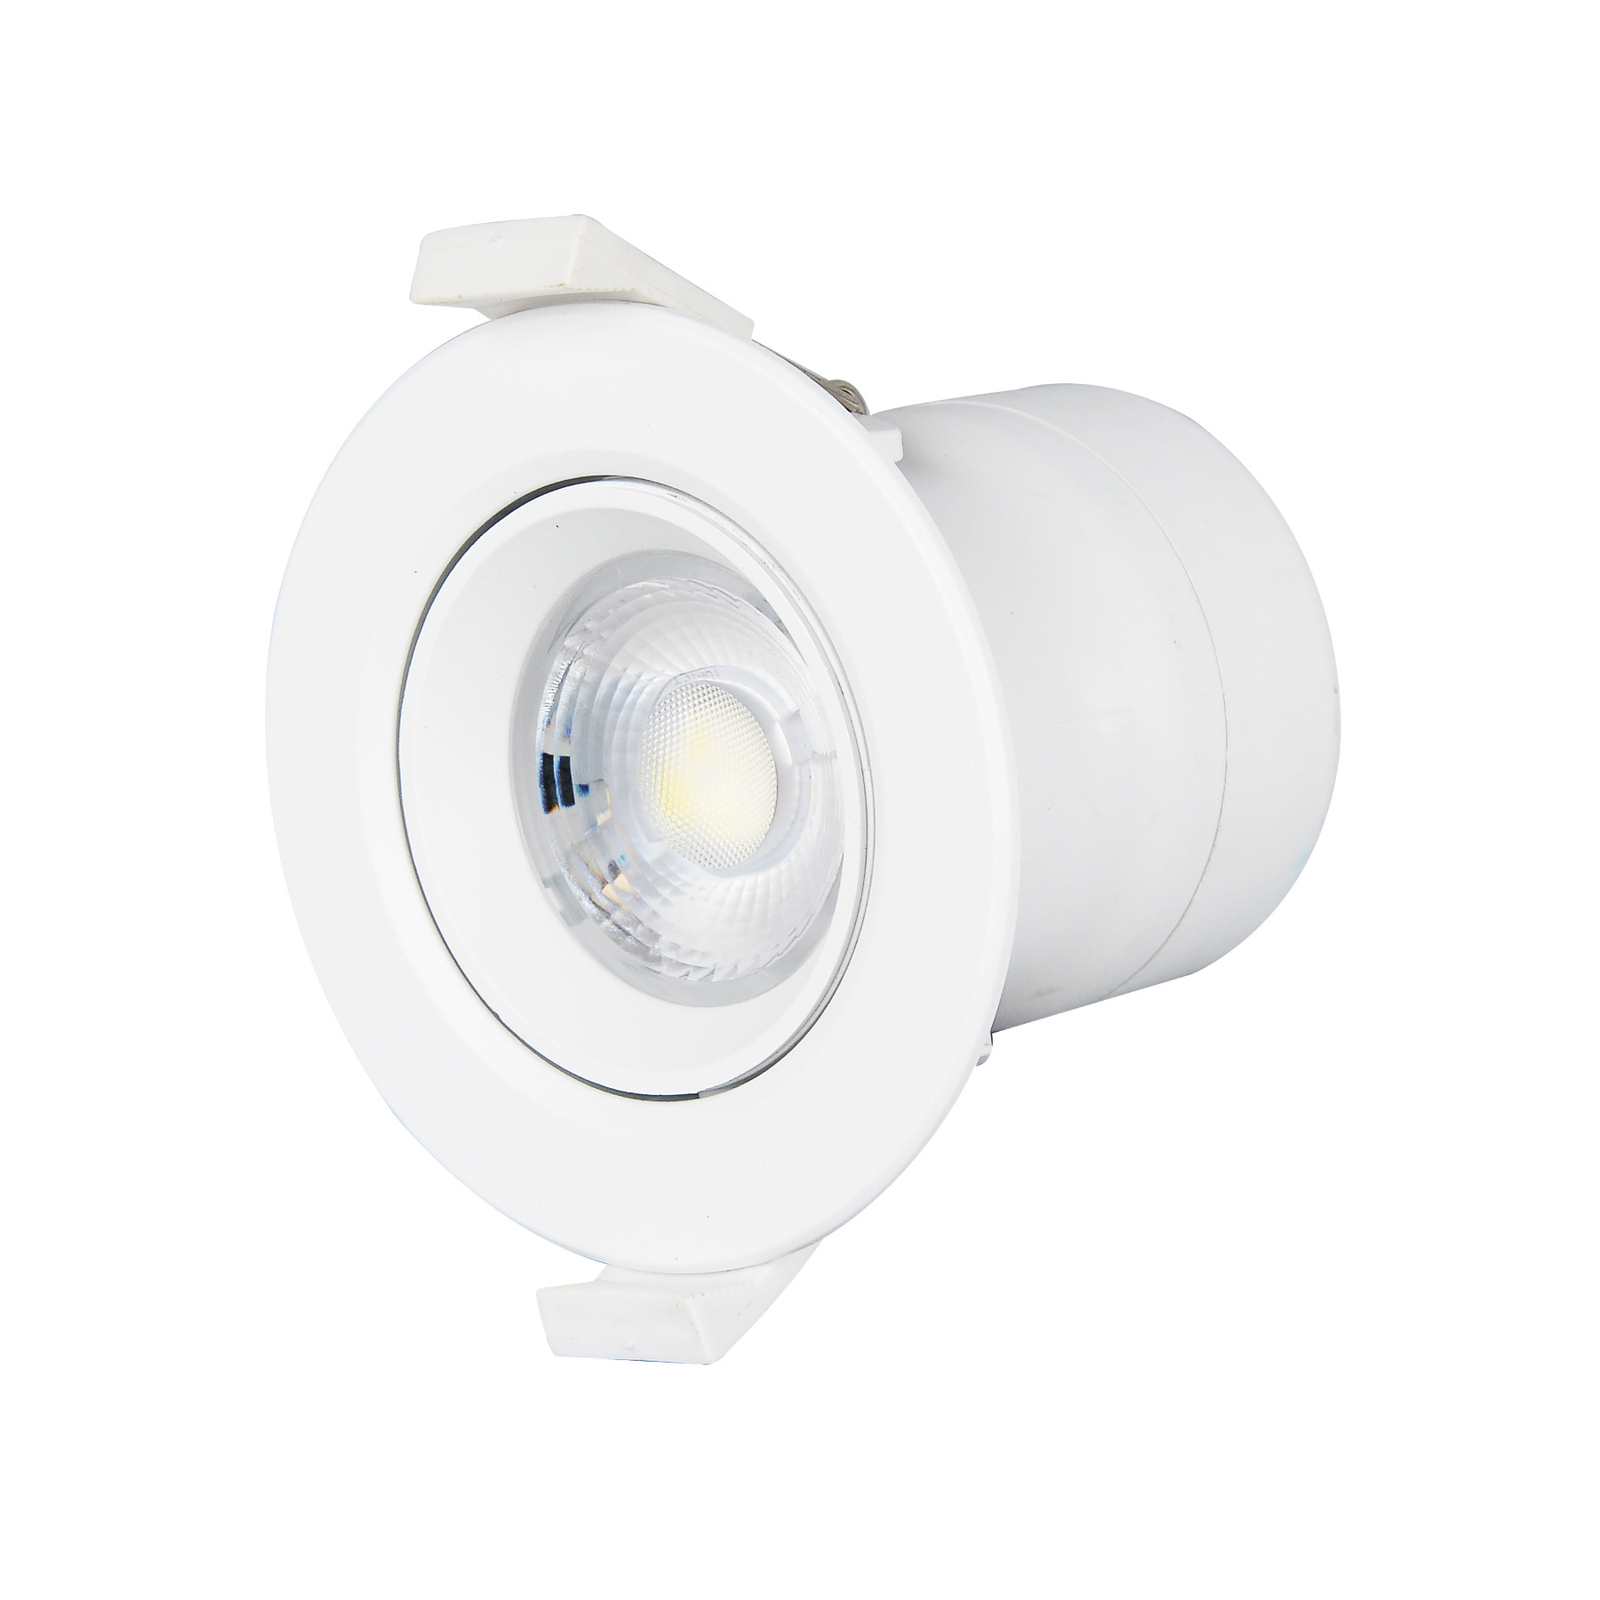 Prios lampe encastrable LED Shima, blanc, 7W, 3000K, par 10, intensité